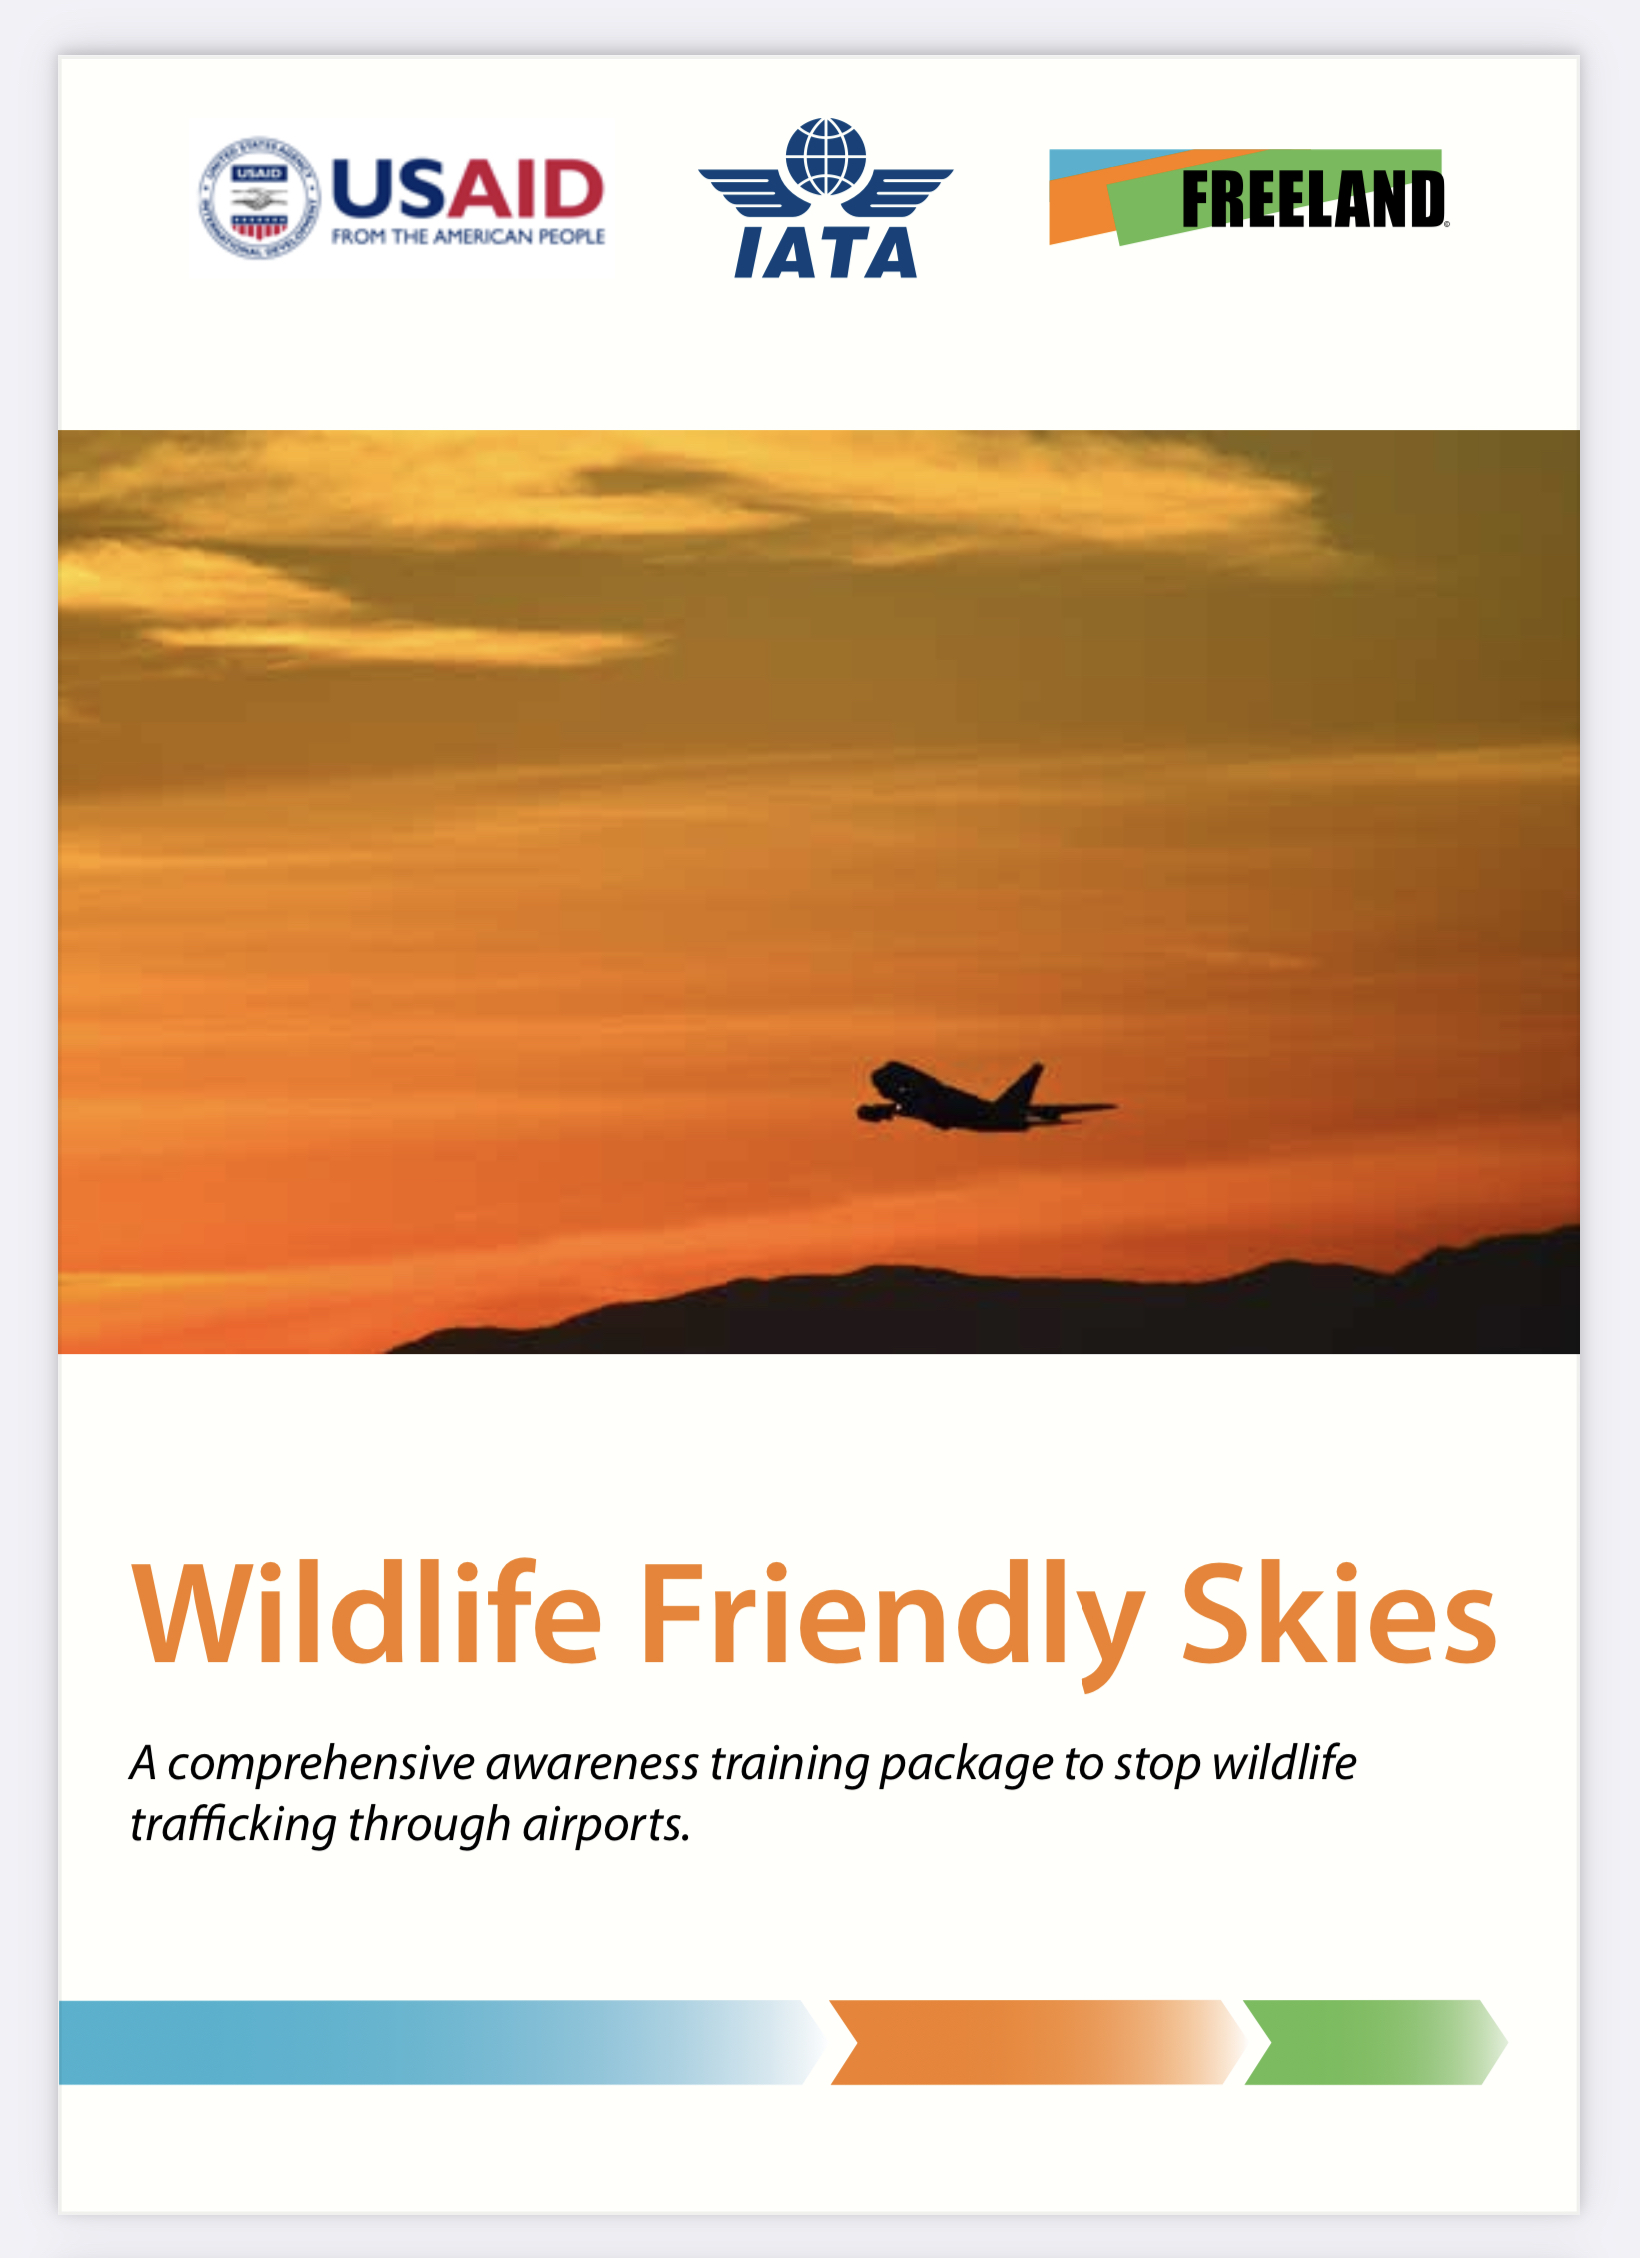 Wildlife Friendly Skies image